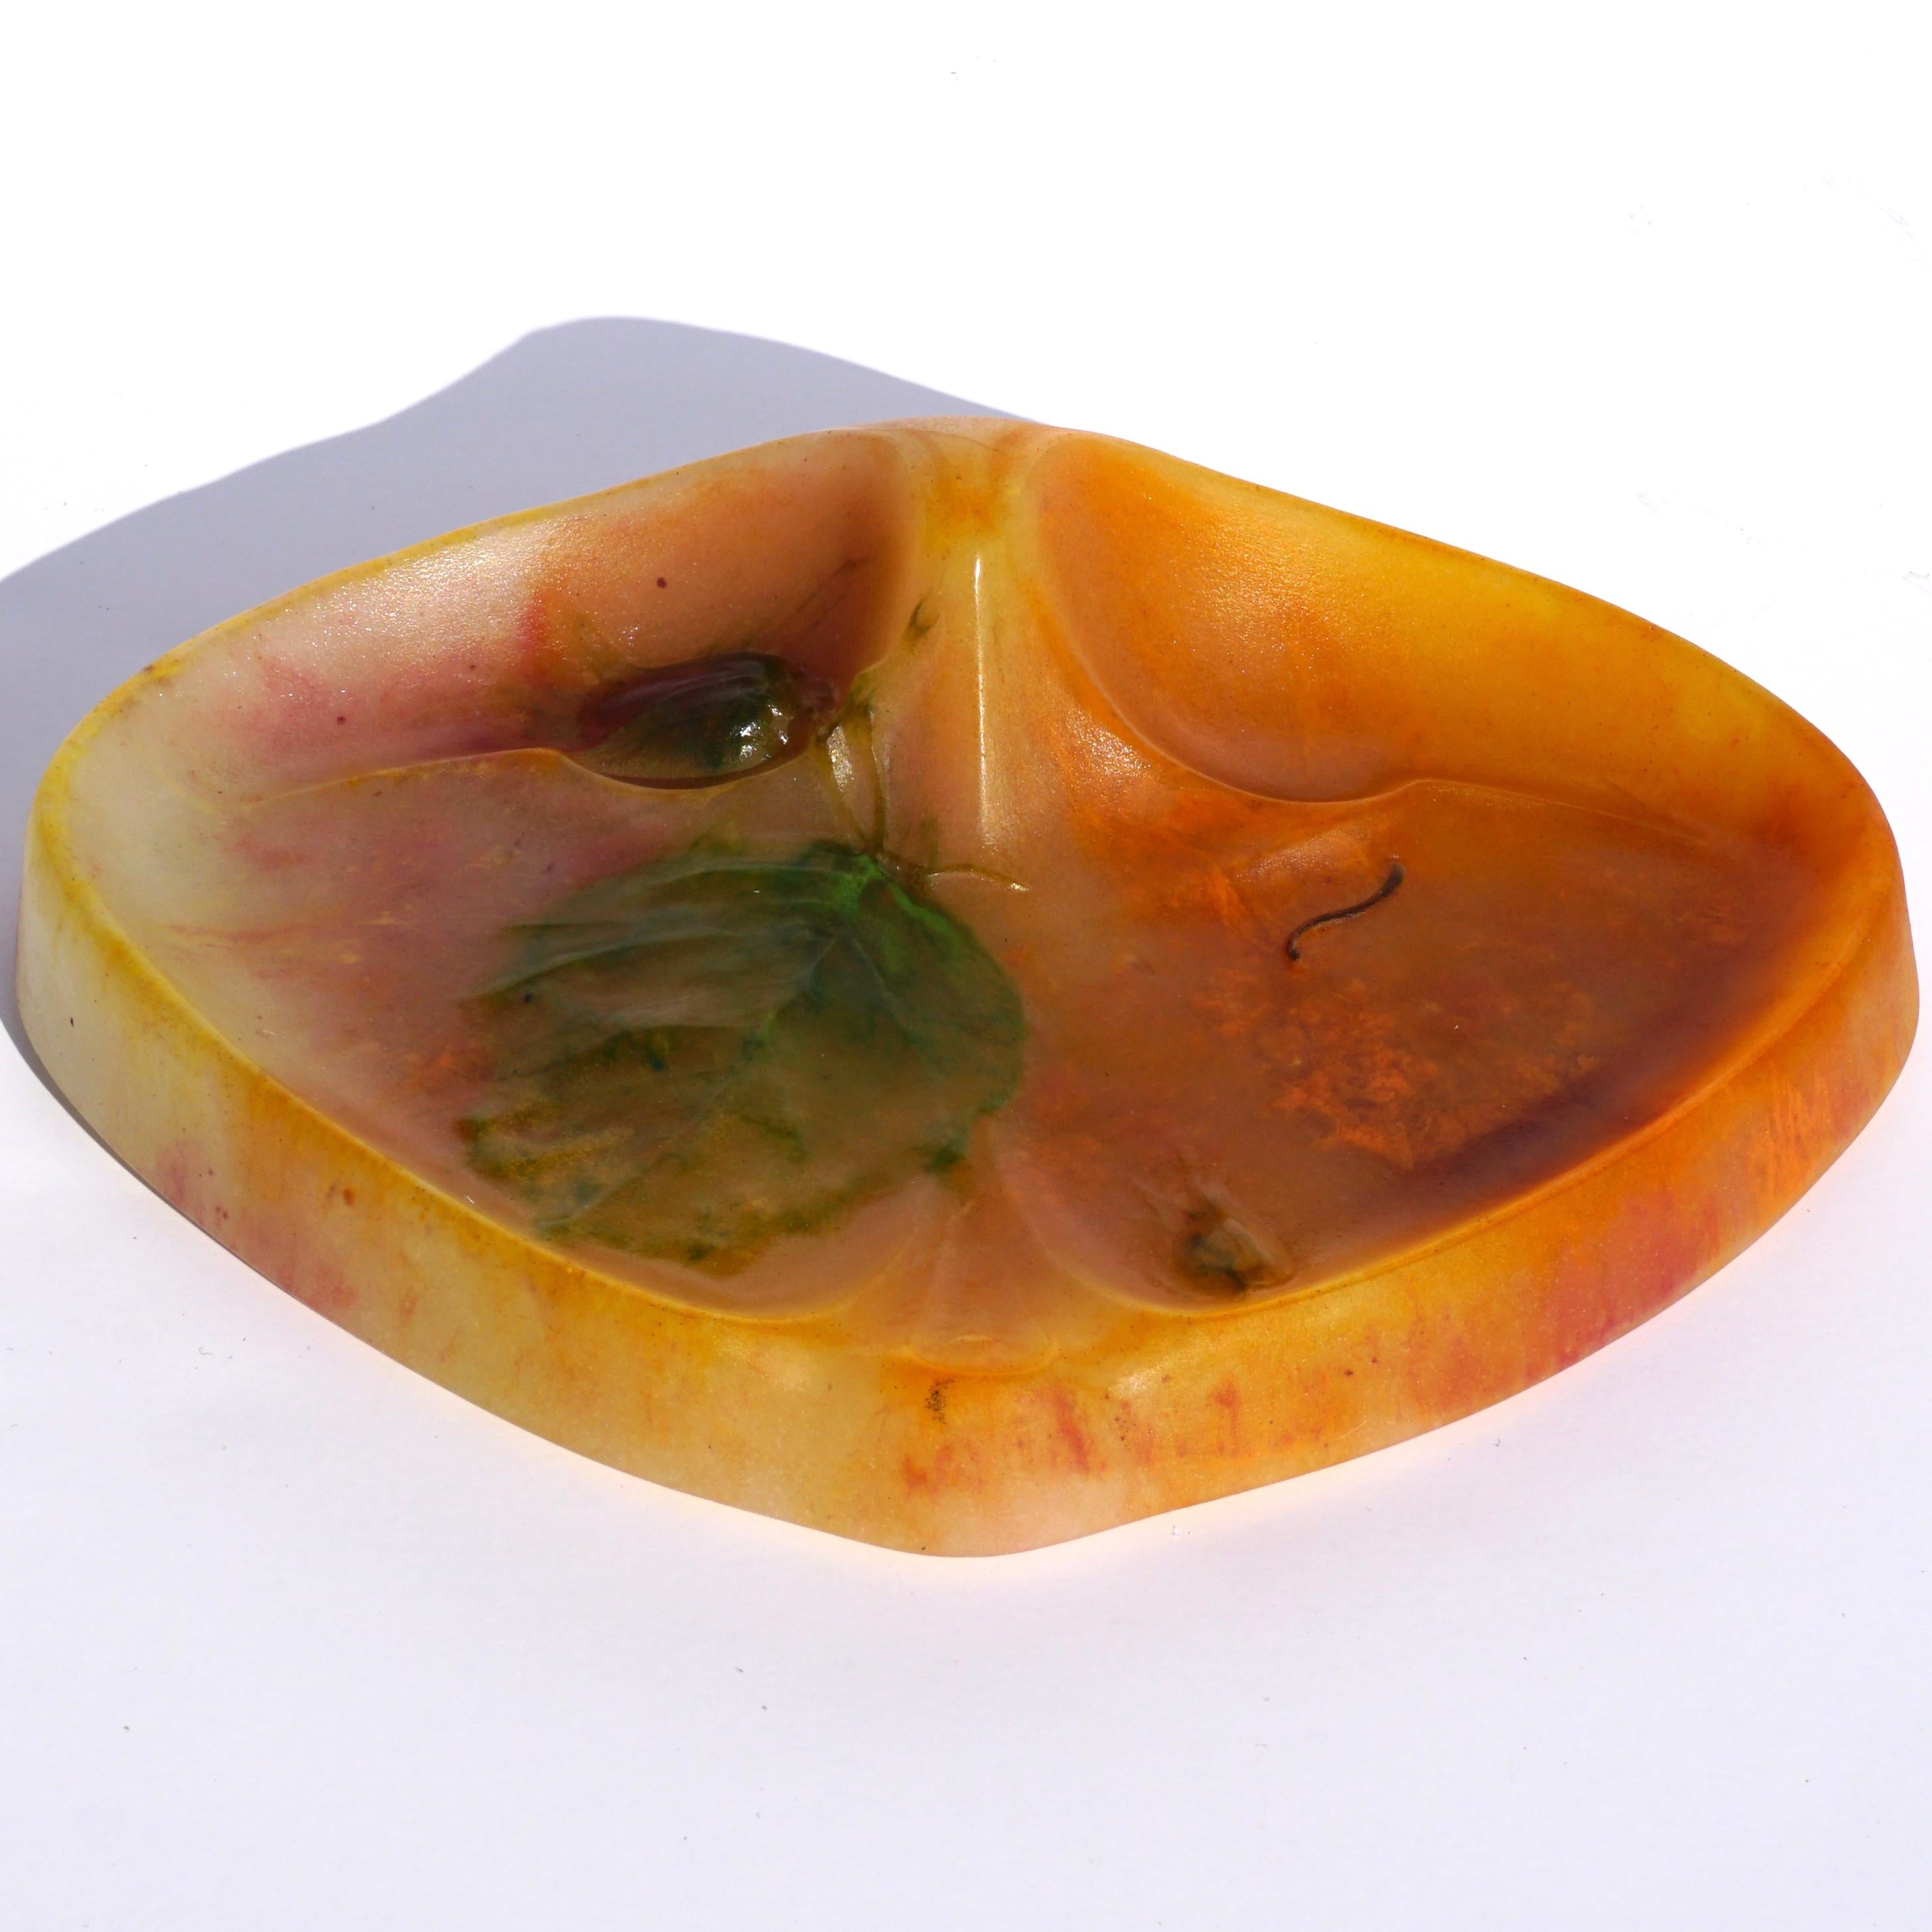 Très rare pate de verre Daum Nancy 'Noisettes' vide poche en orange, rouge, vert et jaune. Daum, à Nancy, est à l'origine du design Art nouveau de la nature en mouvement à travers le verre, le bois et d'autres matériaux. Cet exemplaire est en